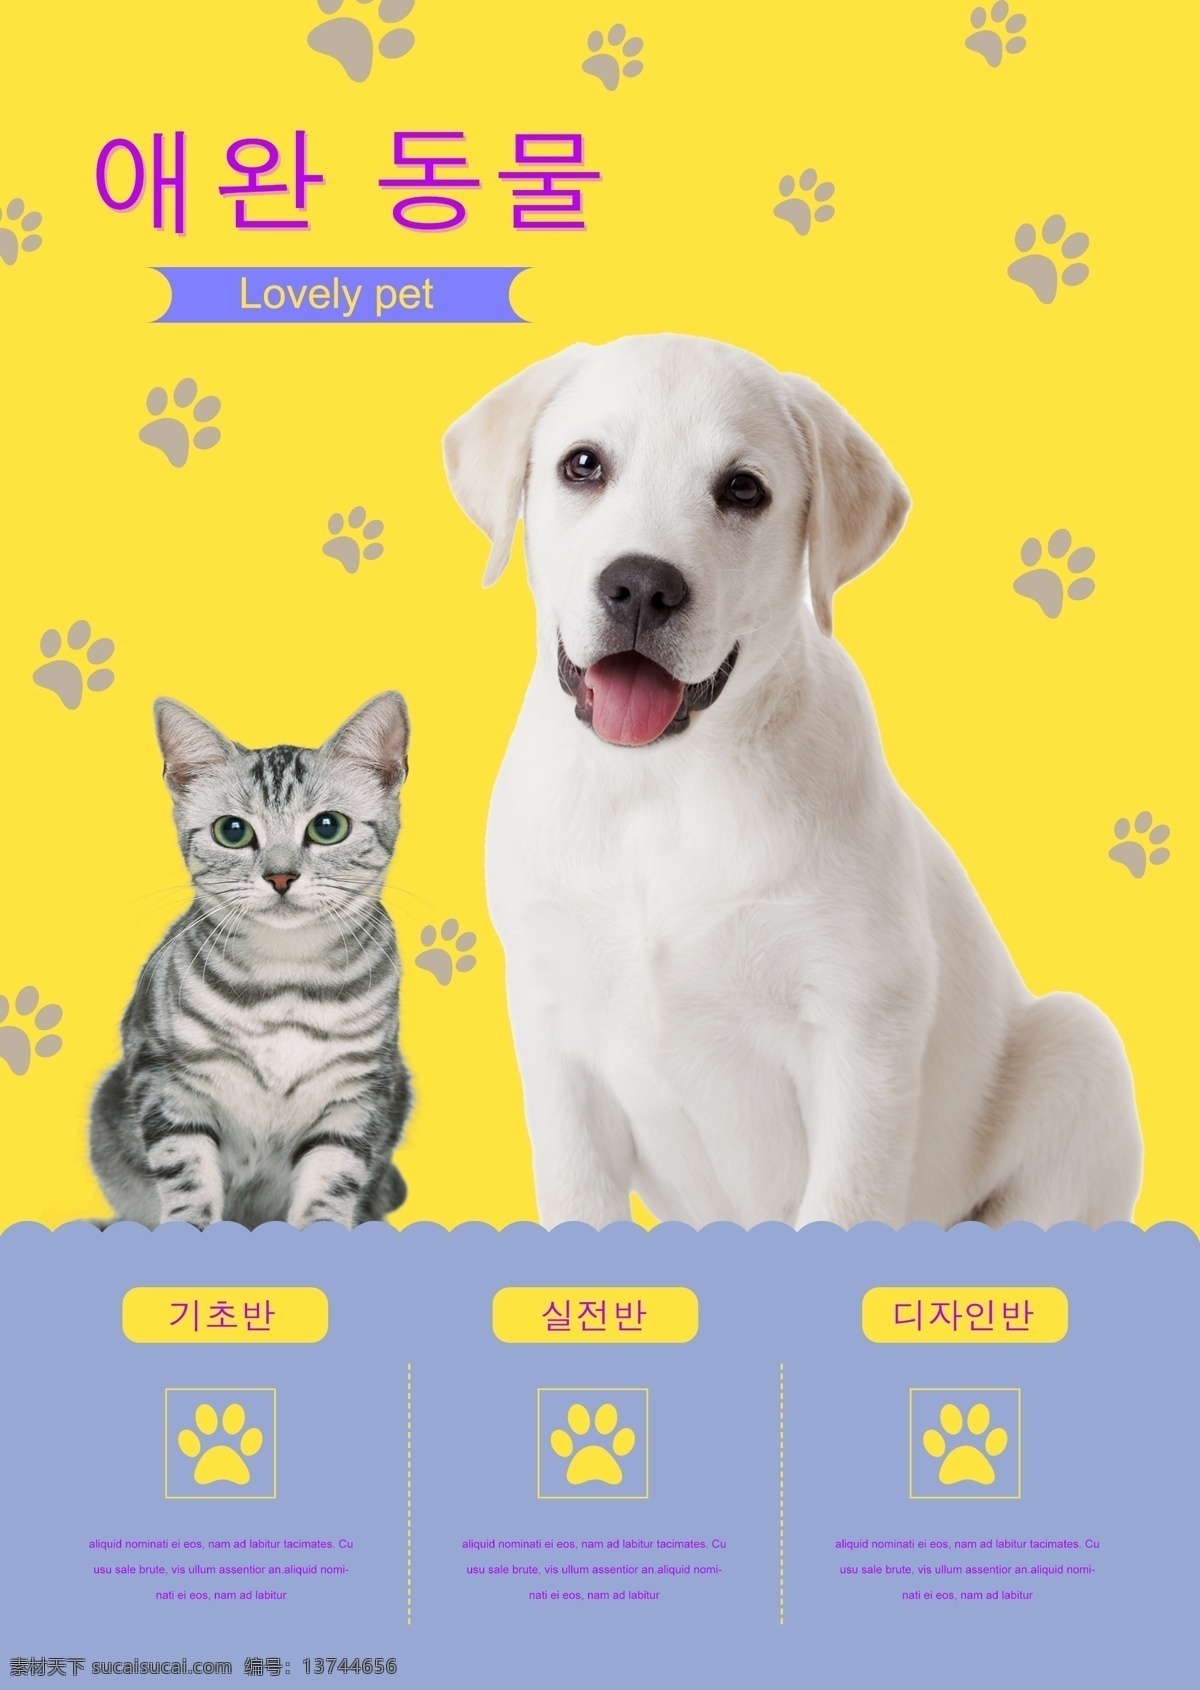 猫 狗 美容 体格 检查 黄色 海报 谈论 关于 溺爱 物理 可爱 美女 关心 宠物 红色 小狗